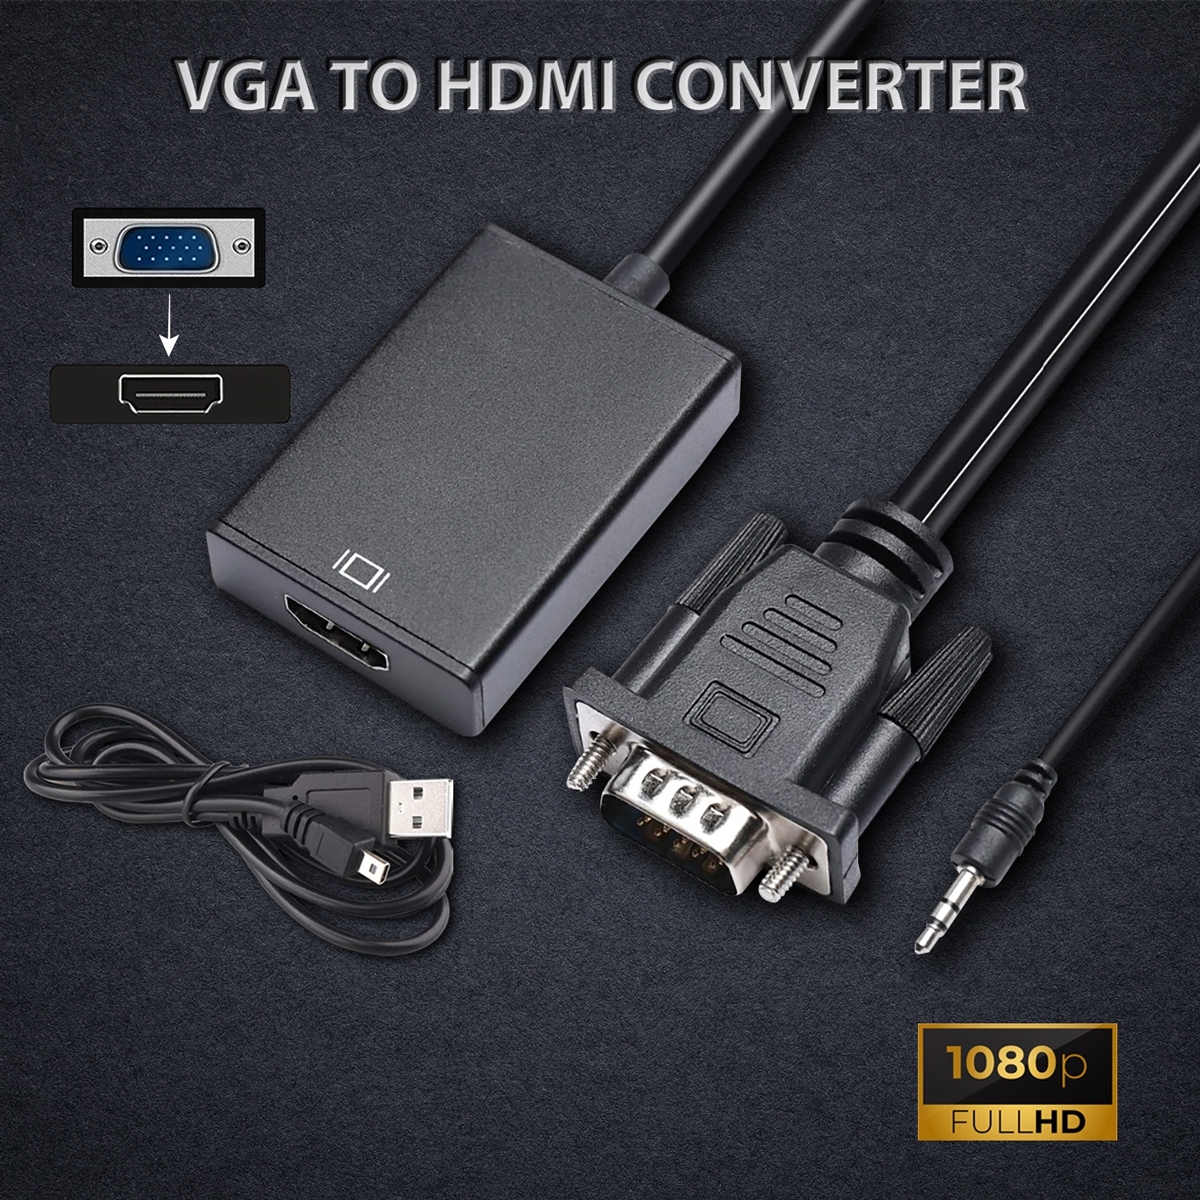 สายแปลง VGA to HDMI vga2hdmi Full HD 1080 รองรับทุกระบบปฎิบัติการ อุปกรณ์แปลงภาพ VGA เป็น HDMI / D-Phone